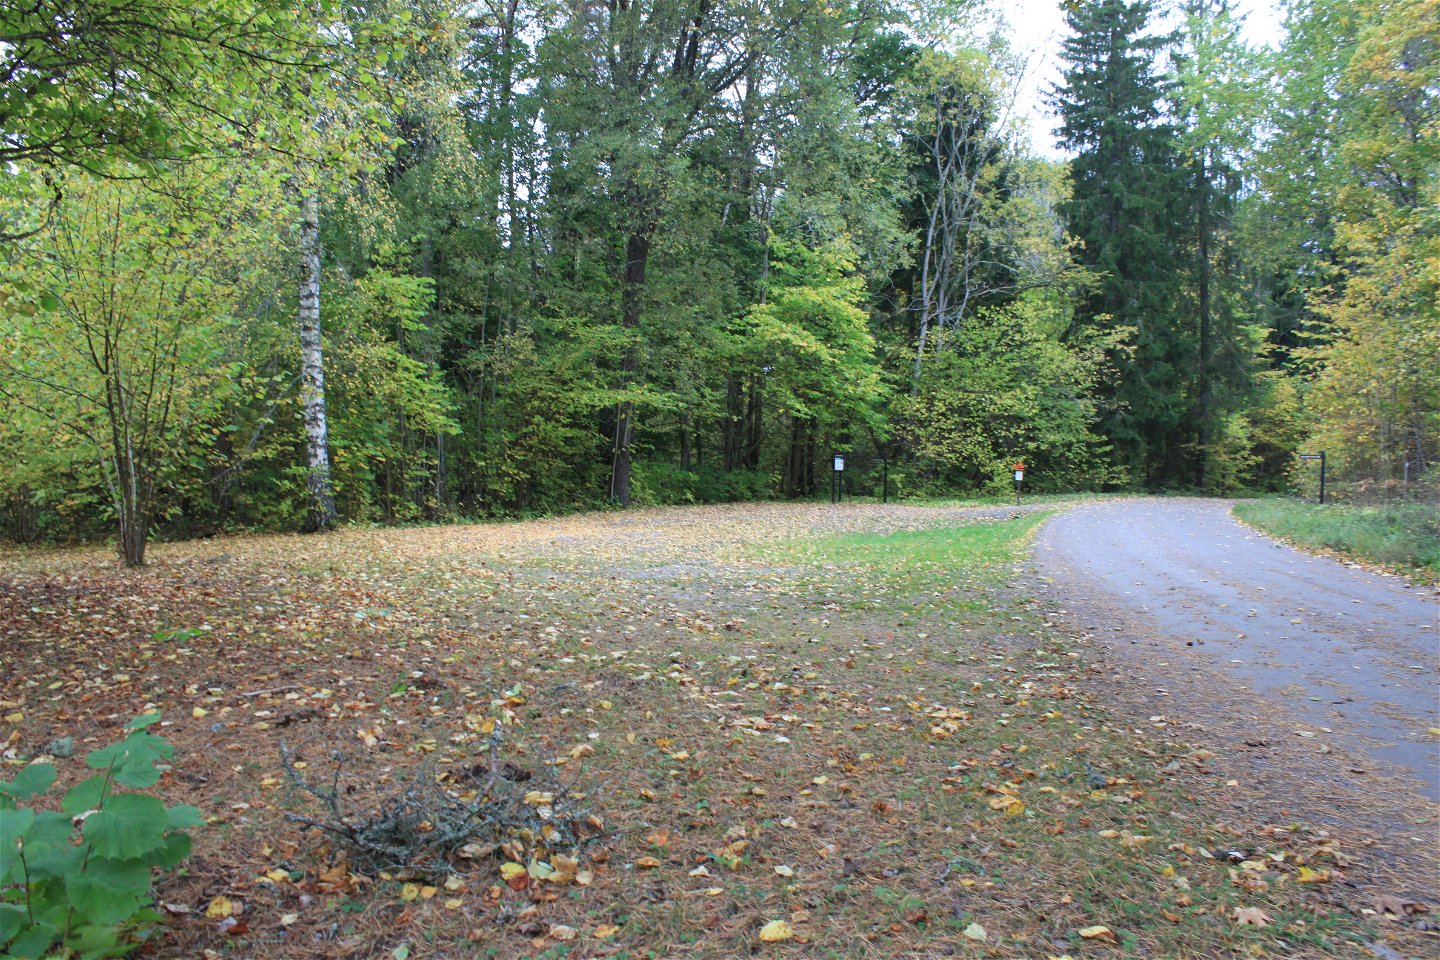 Vid en mindre bilväg finns en rymlig parkeringsplats med en informationstavla. Framför parkeringen är det skog.